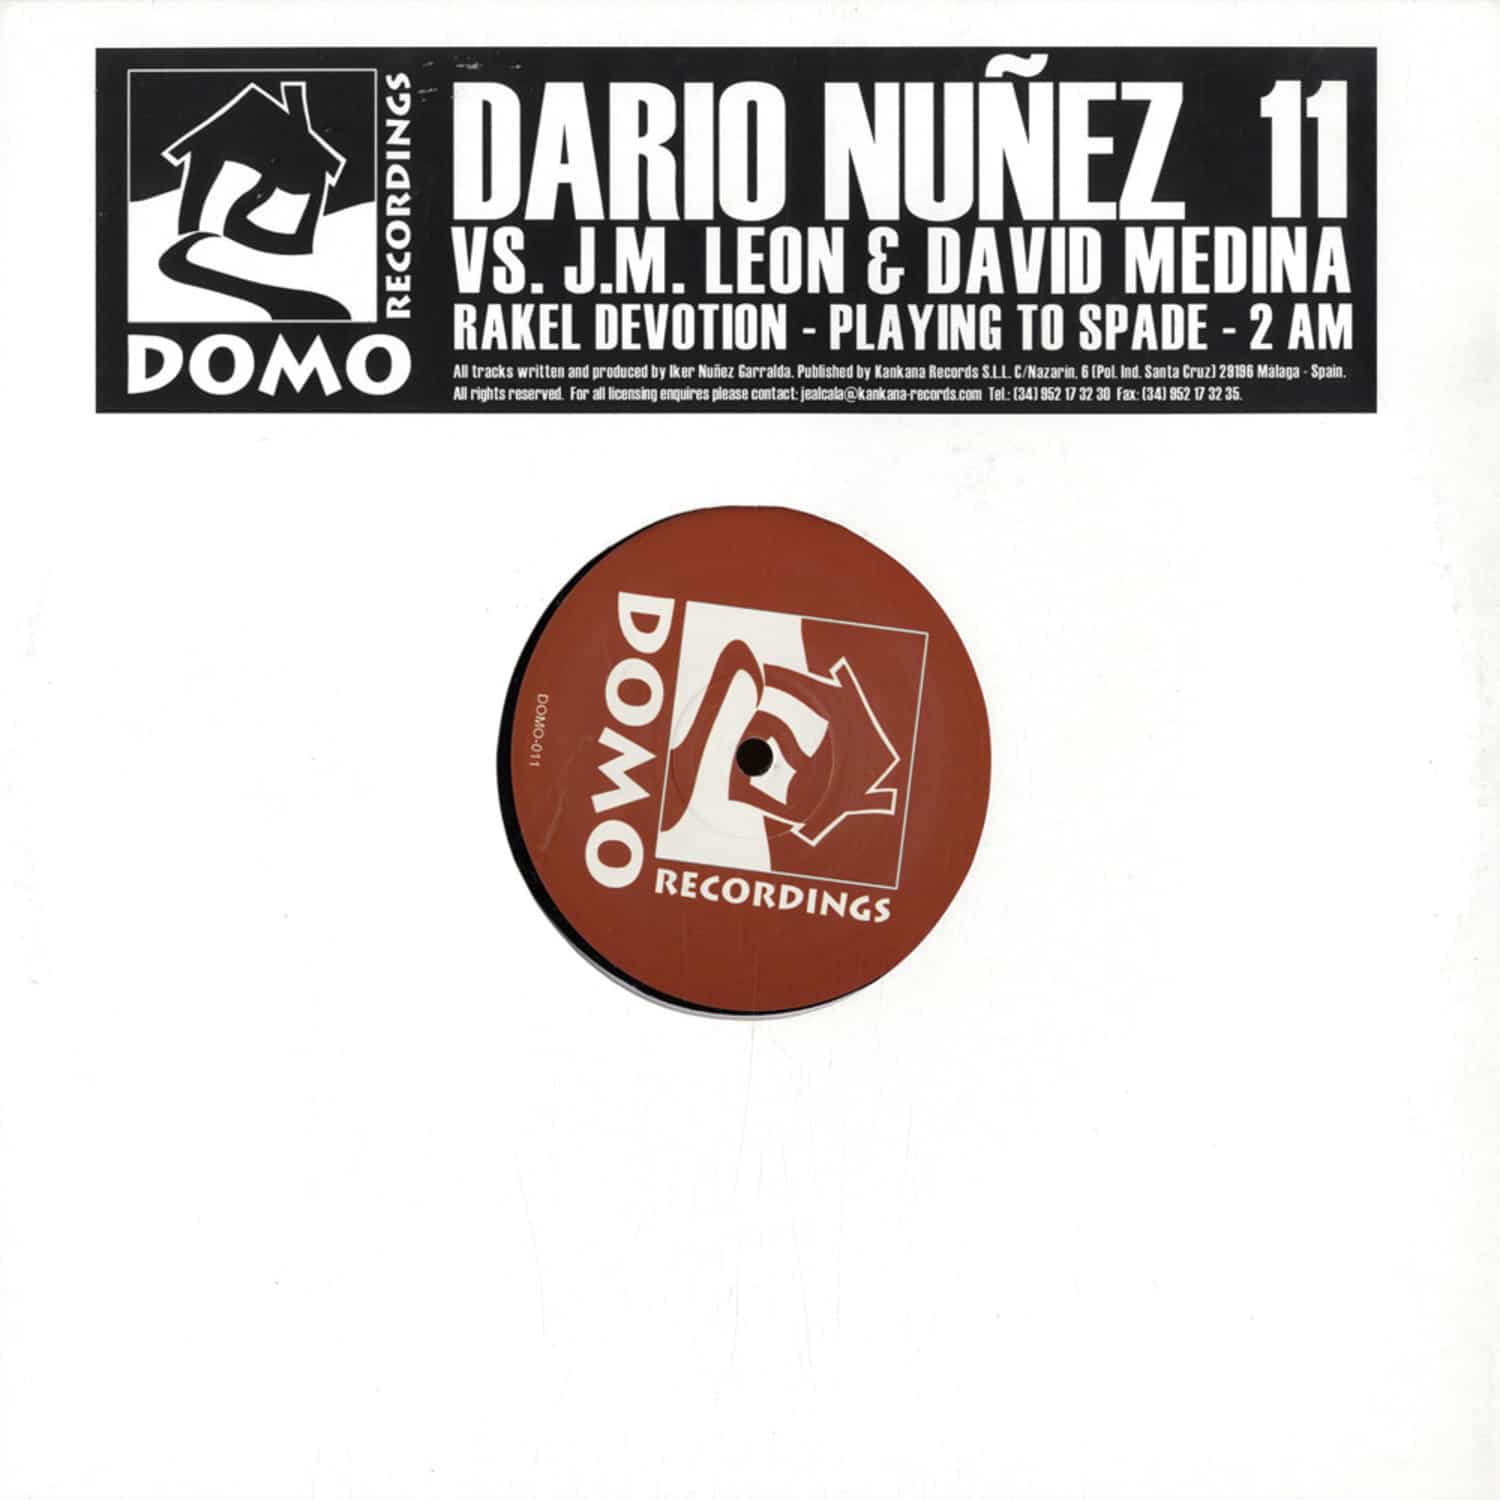 Dario Nunez vs J.M. Leon & David Medina - RAKEL DEVOTION